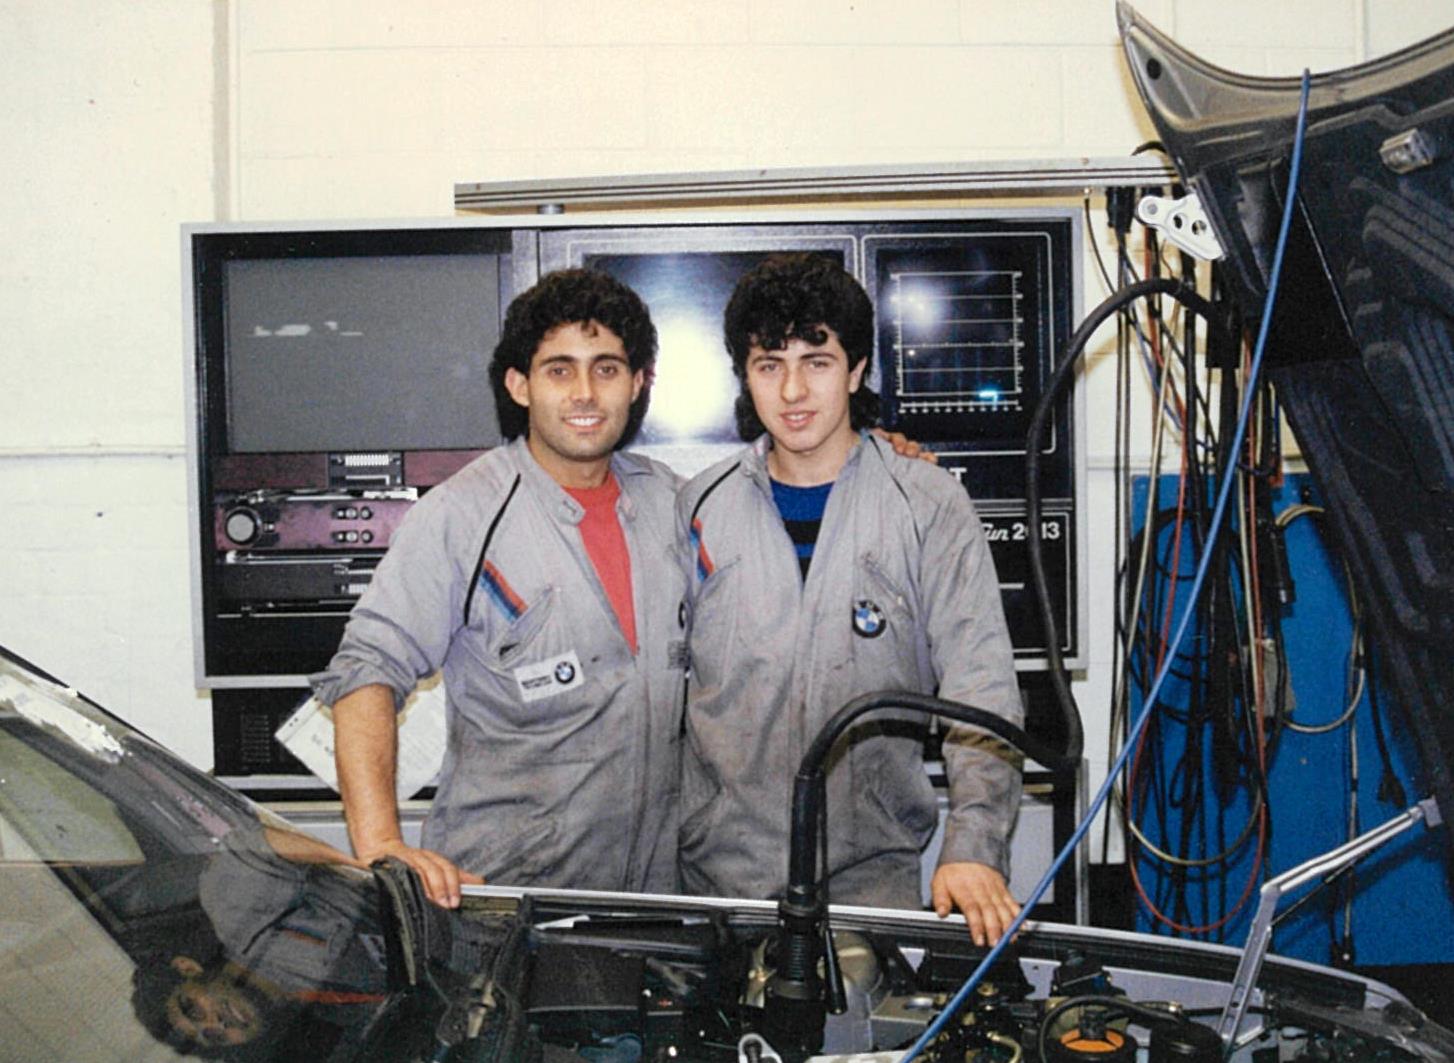 Joe and Chris at Grand Prix BMW 1988